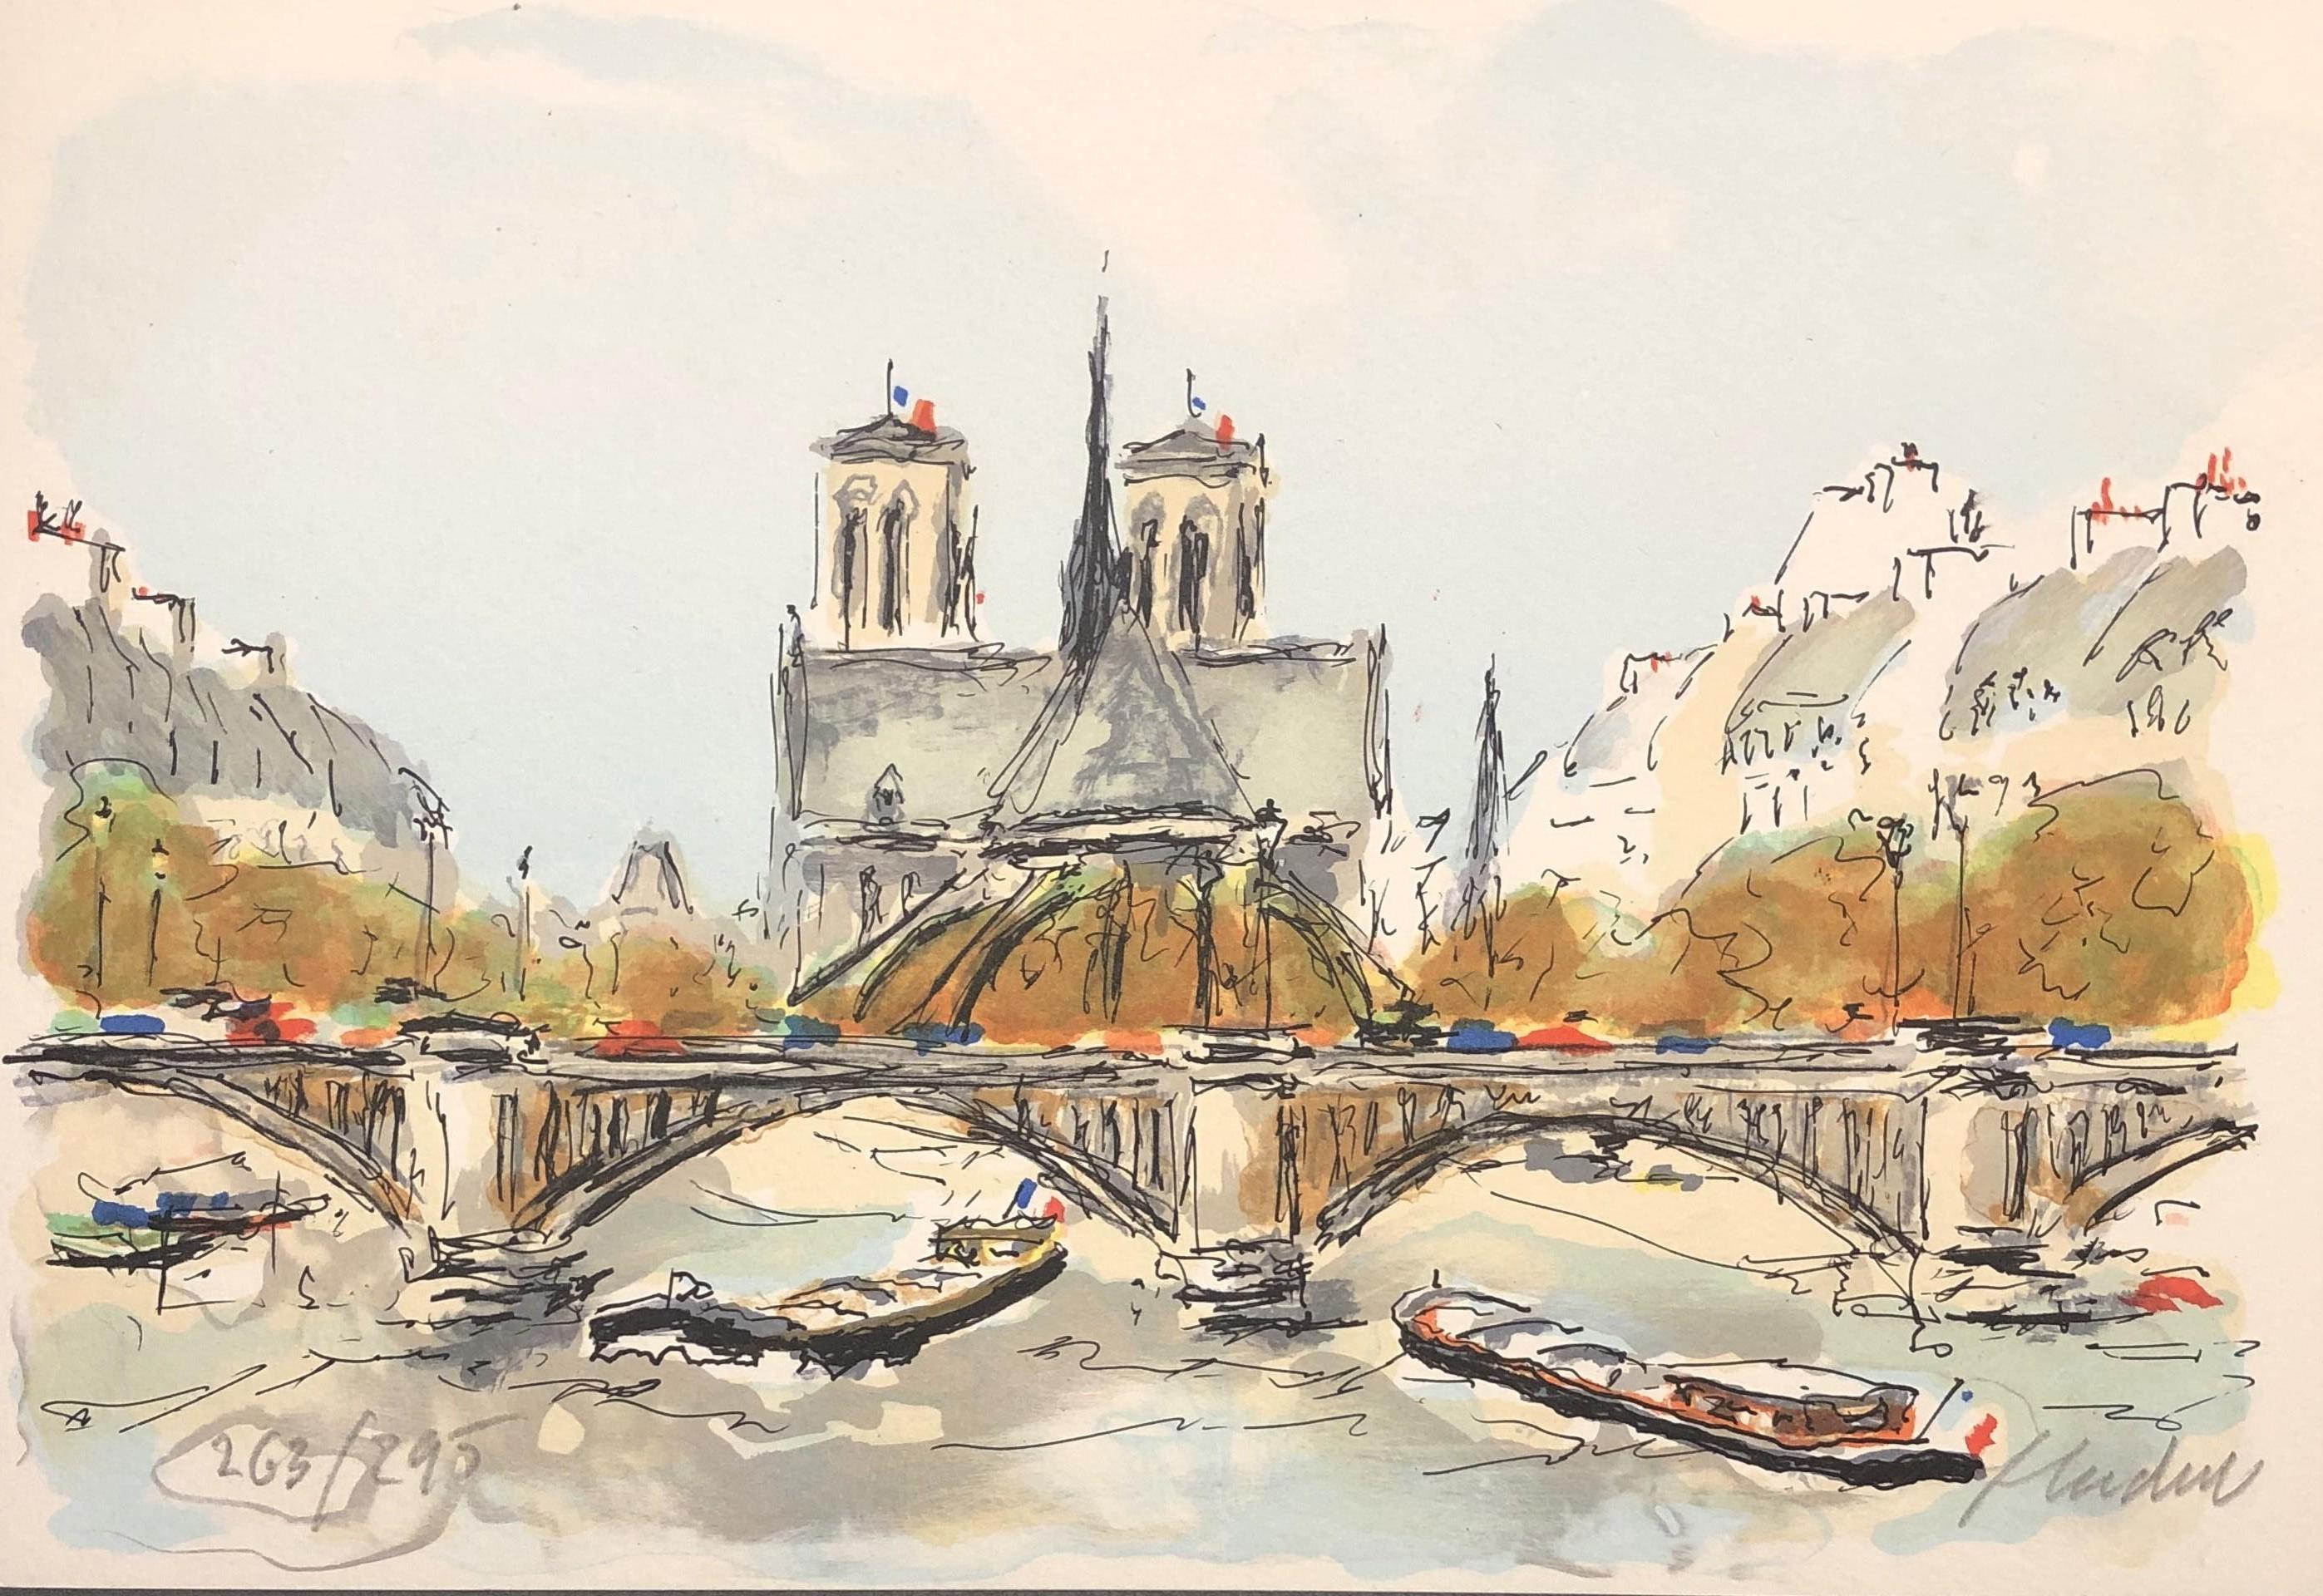 Urbain Huchet Landscape Print - Paris, Notre Dame de Paris and Seine River - Original Lithograph Handsigned & N°